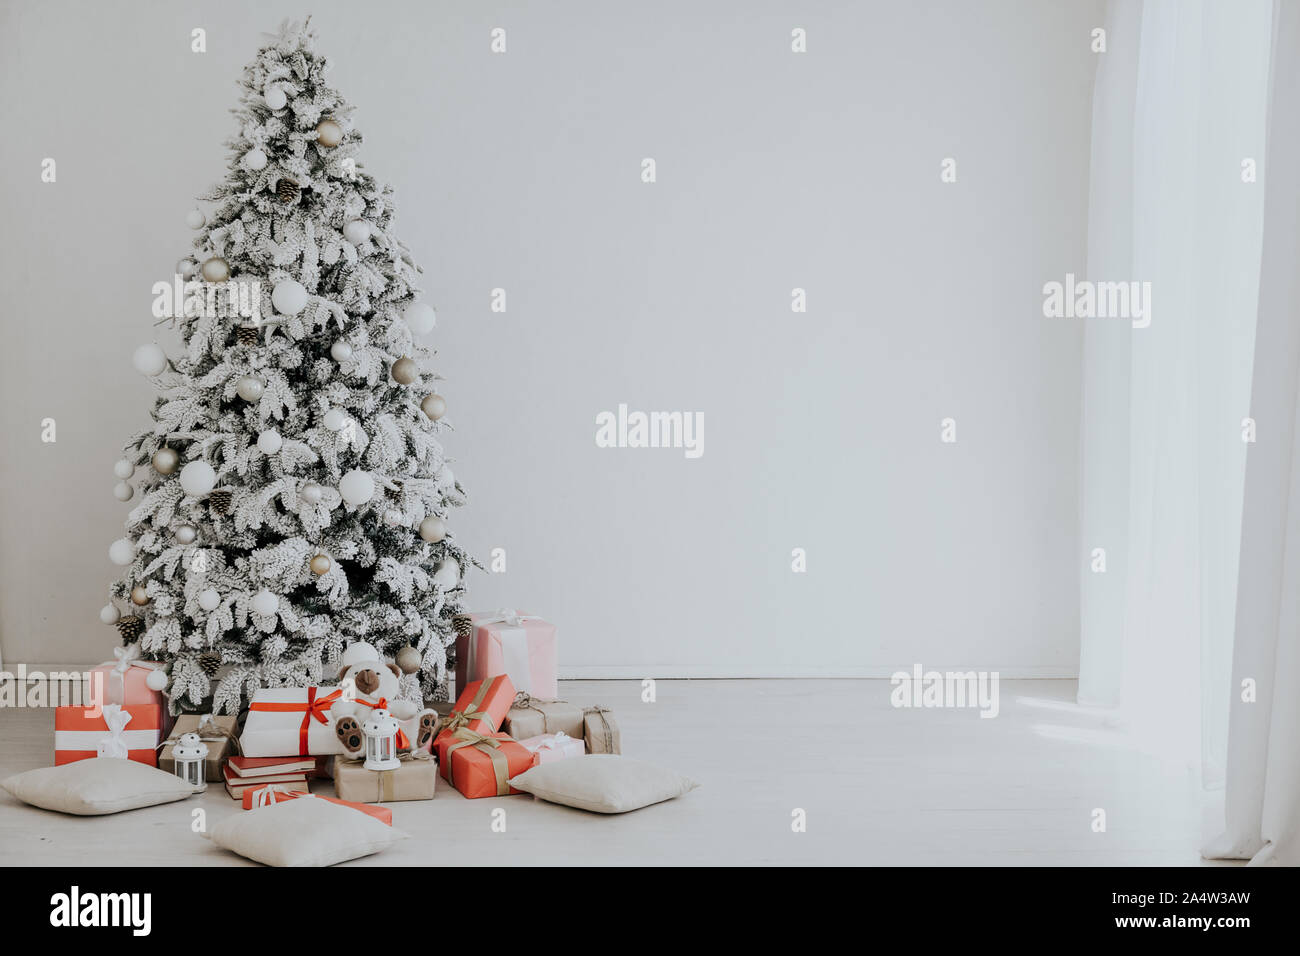 Regali Natale 2020.Scheda Di Natale Albero Di Natale Con Holiday Regali Di Natale 2020 Foto Stock Alamy